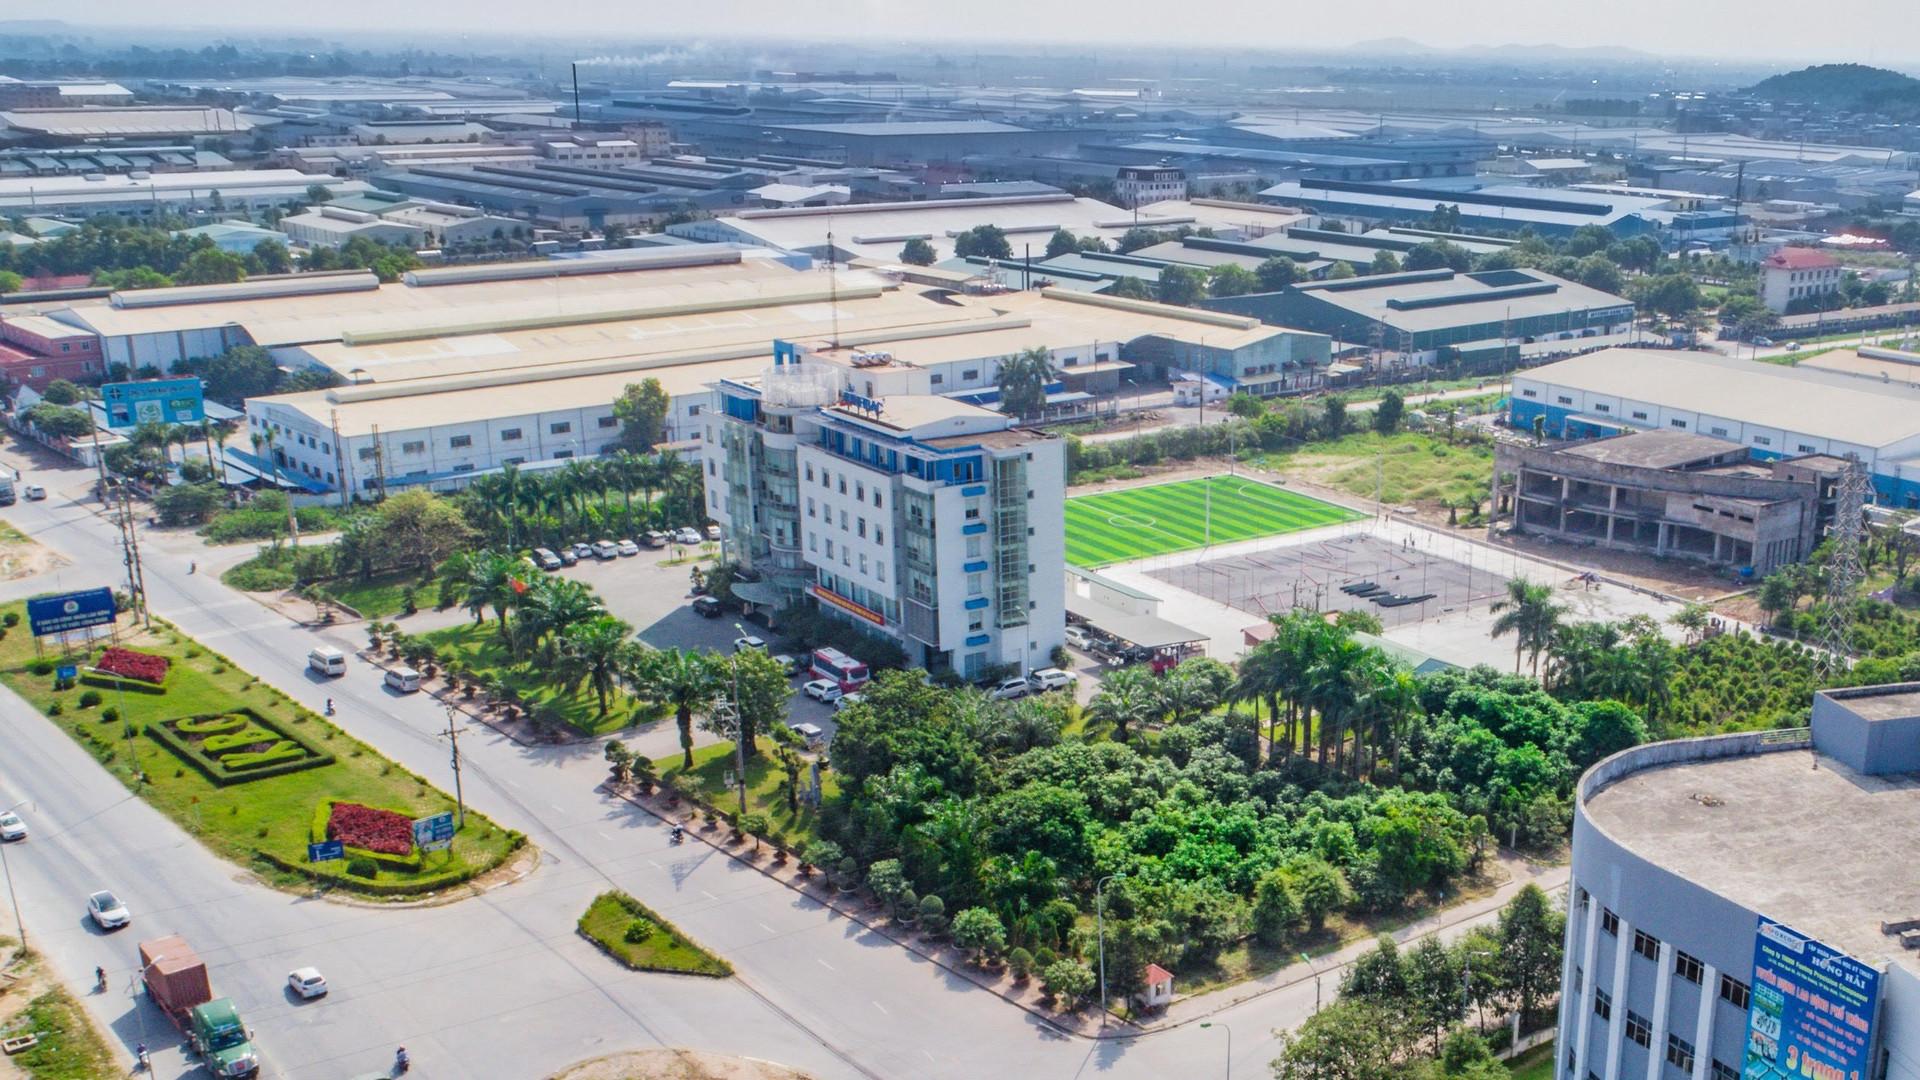 
Chủ đầu tư những dự án kinh doanh hạ tầng khu công nghiệp tại Việt Nam vẫn còn hạn chế về cả năng lực lẫn tài chính
